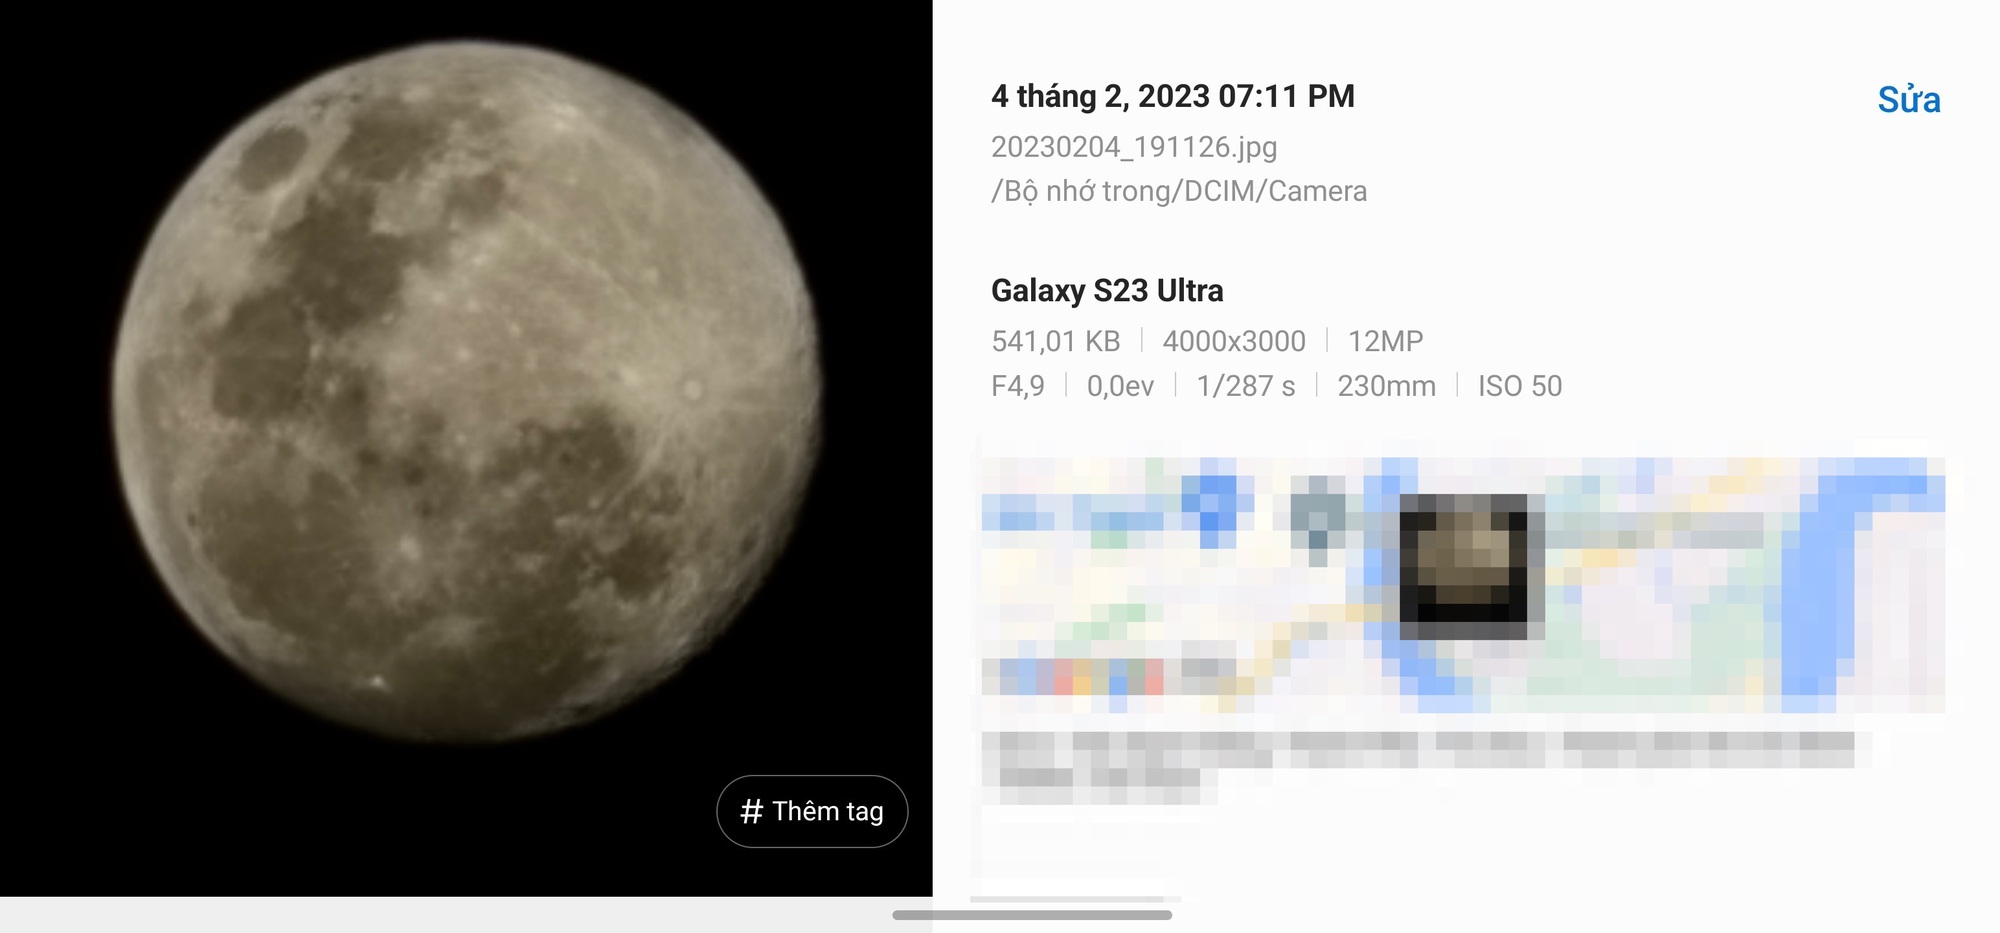 Nhìn từ khả năng “Space Zoom” chụp trăng của Galaxy S23 Ultra, câu chuyện thật - giả giữa AI và nhiếp ảnh - Ảnh 13.